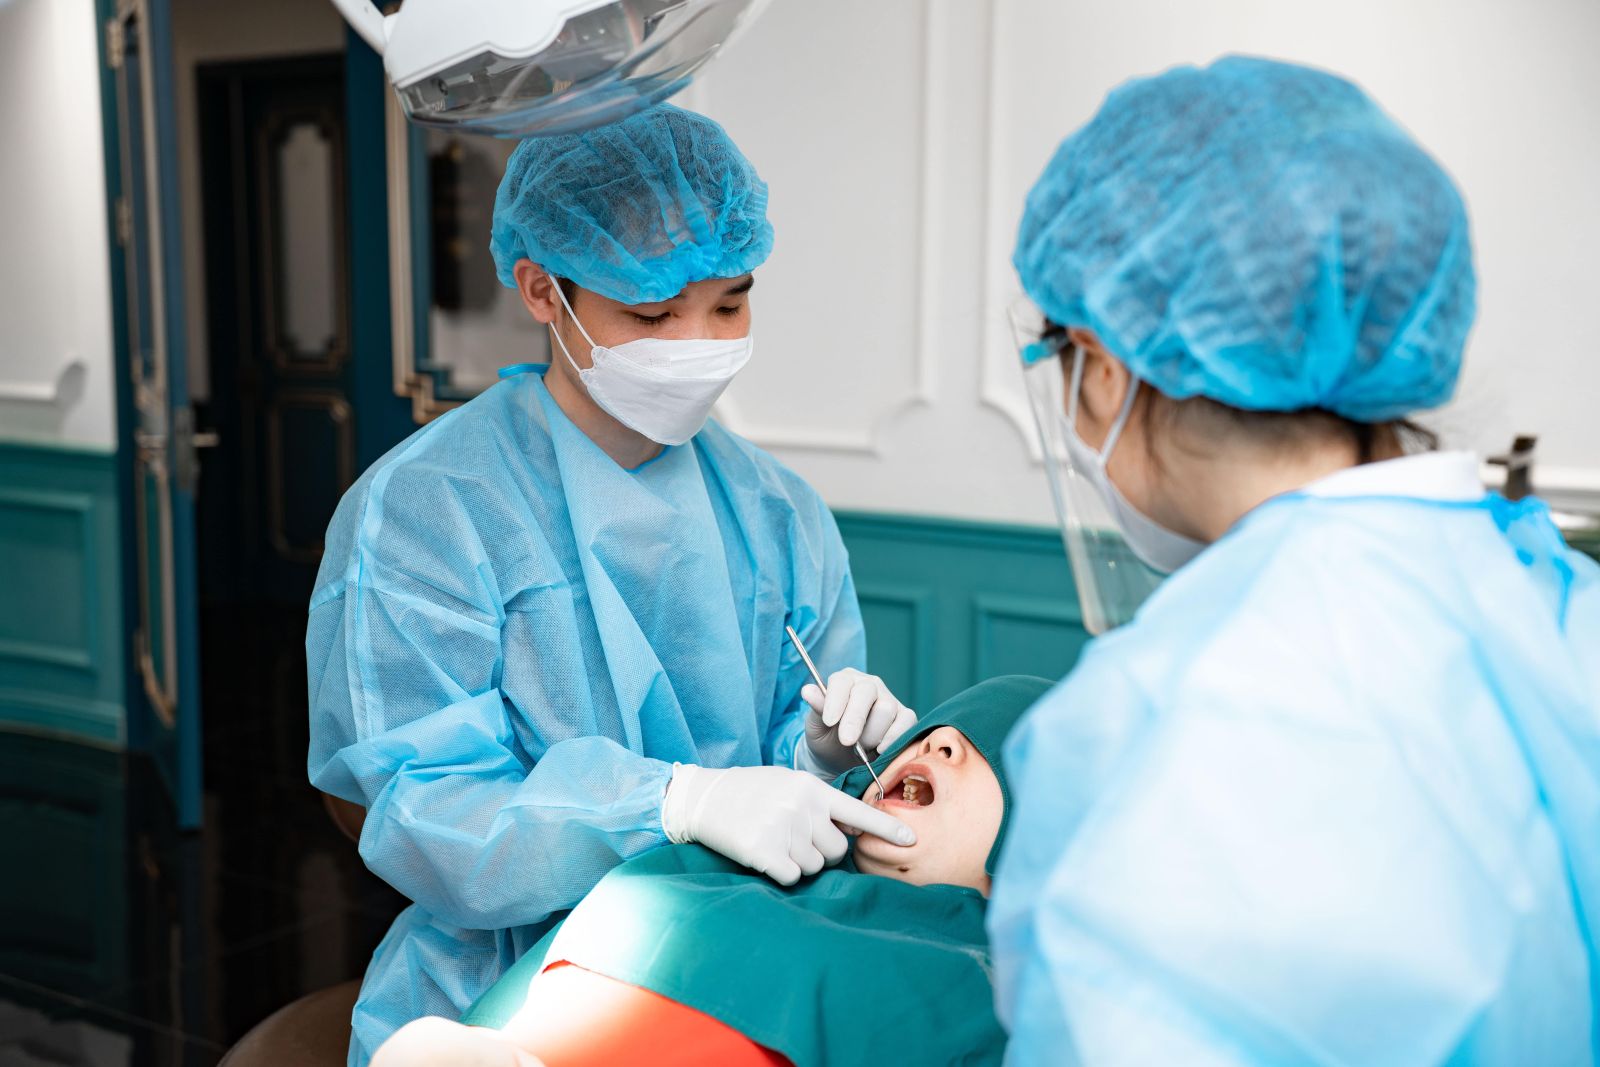 Đội ngũ bác sĩ chuyên môn tại Jet Dentist thực hiện thành công hàng ngàn ca cấy ghép Implant mỗi năm